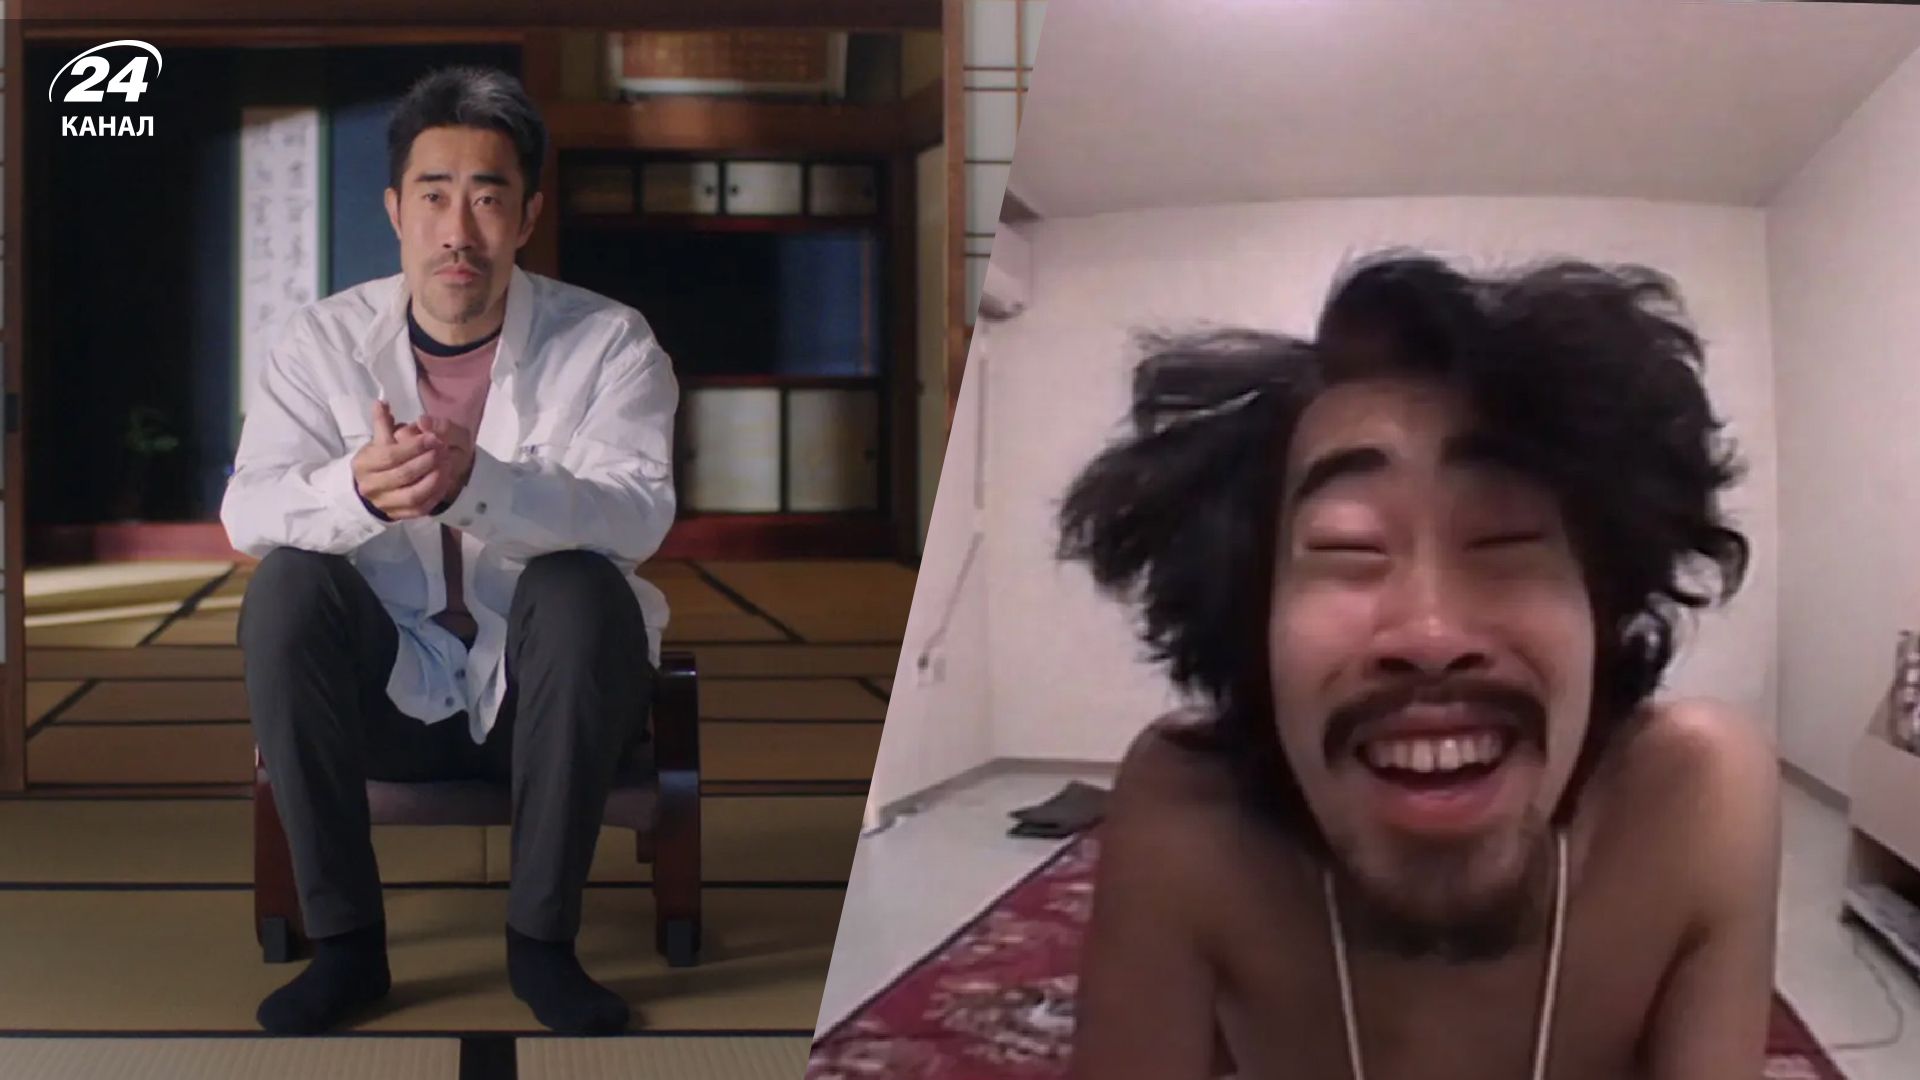 Знімався голим у реаліті-шоу і не знав про це - неймовірна історія з Японії - Men